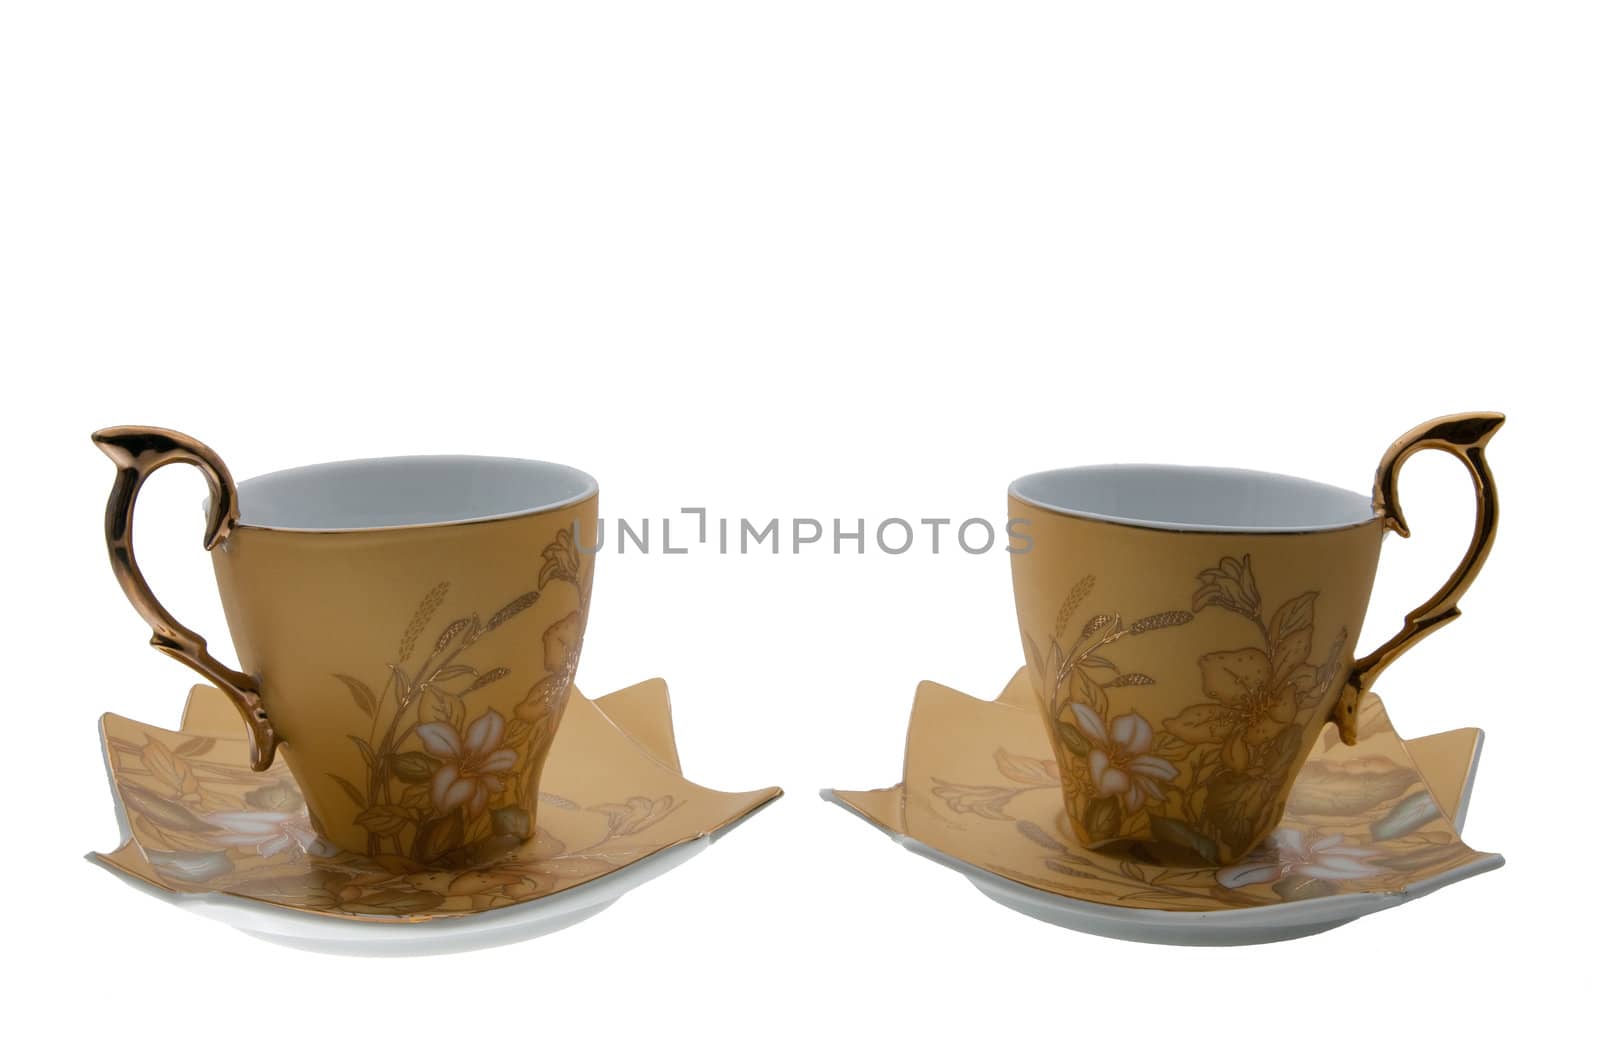 the picture of the ceramic tea pair